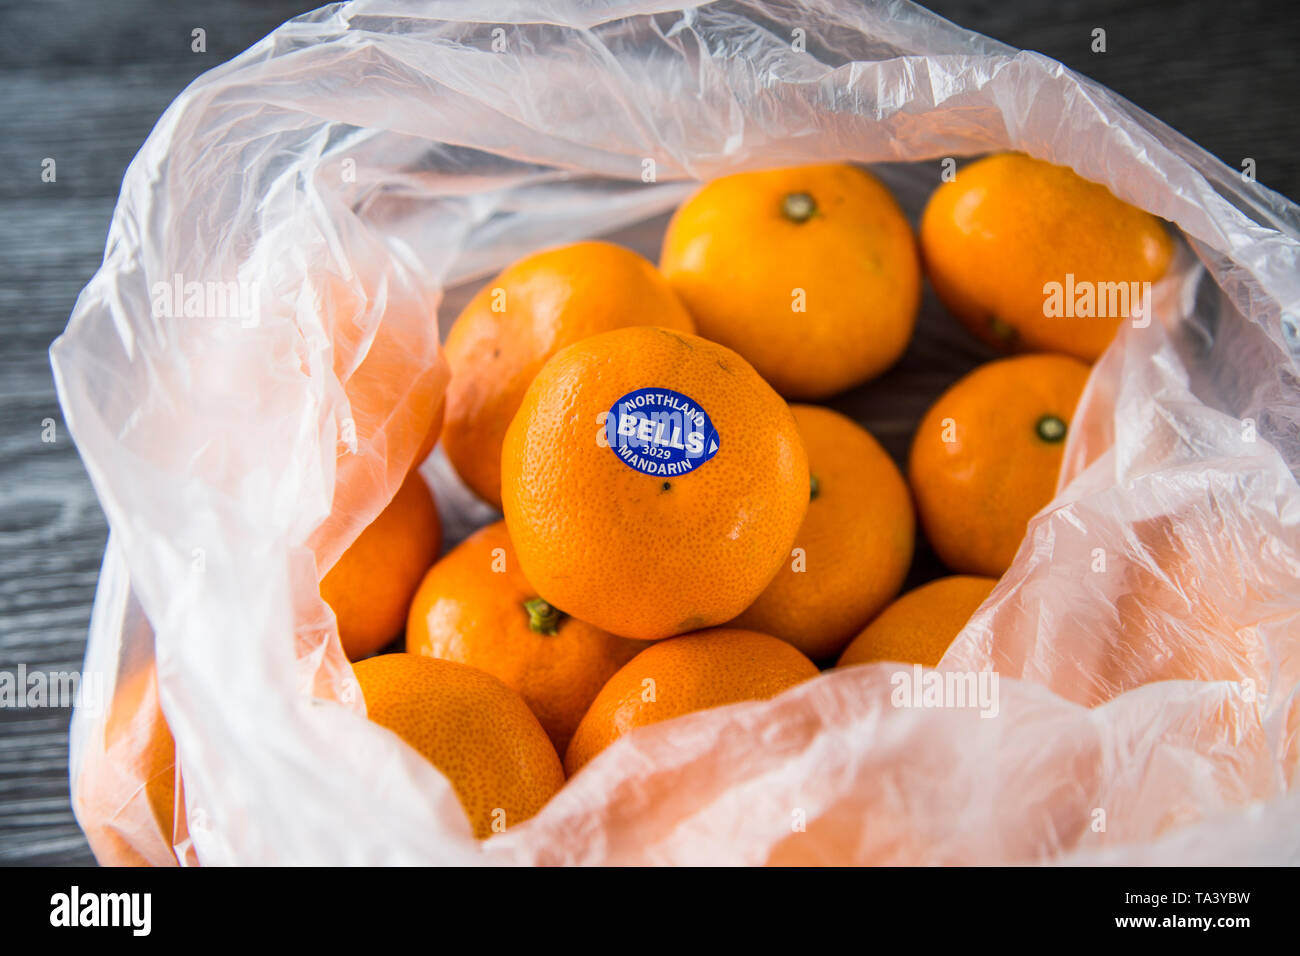 Mandarini acquistati al supermercato in un singolo uso di produrre una busta di plastica. Non rispettosi dell'ambiente. Bella la frutta di arancia, di marca con adesivo. Foto Stock